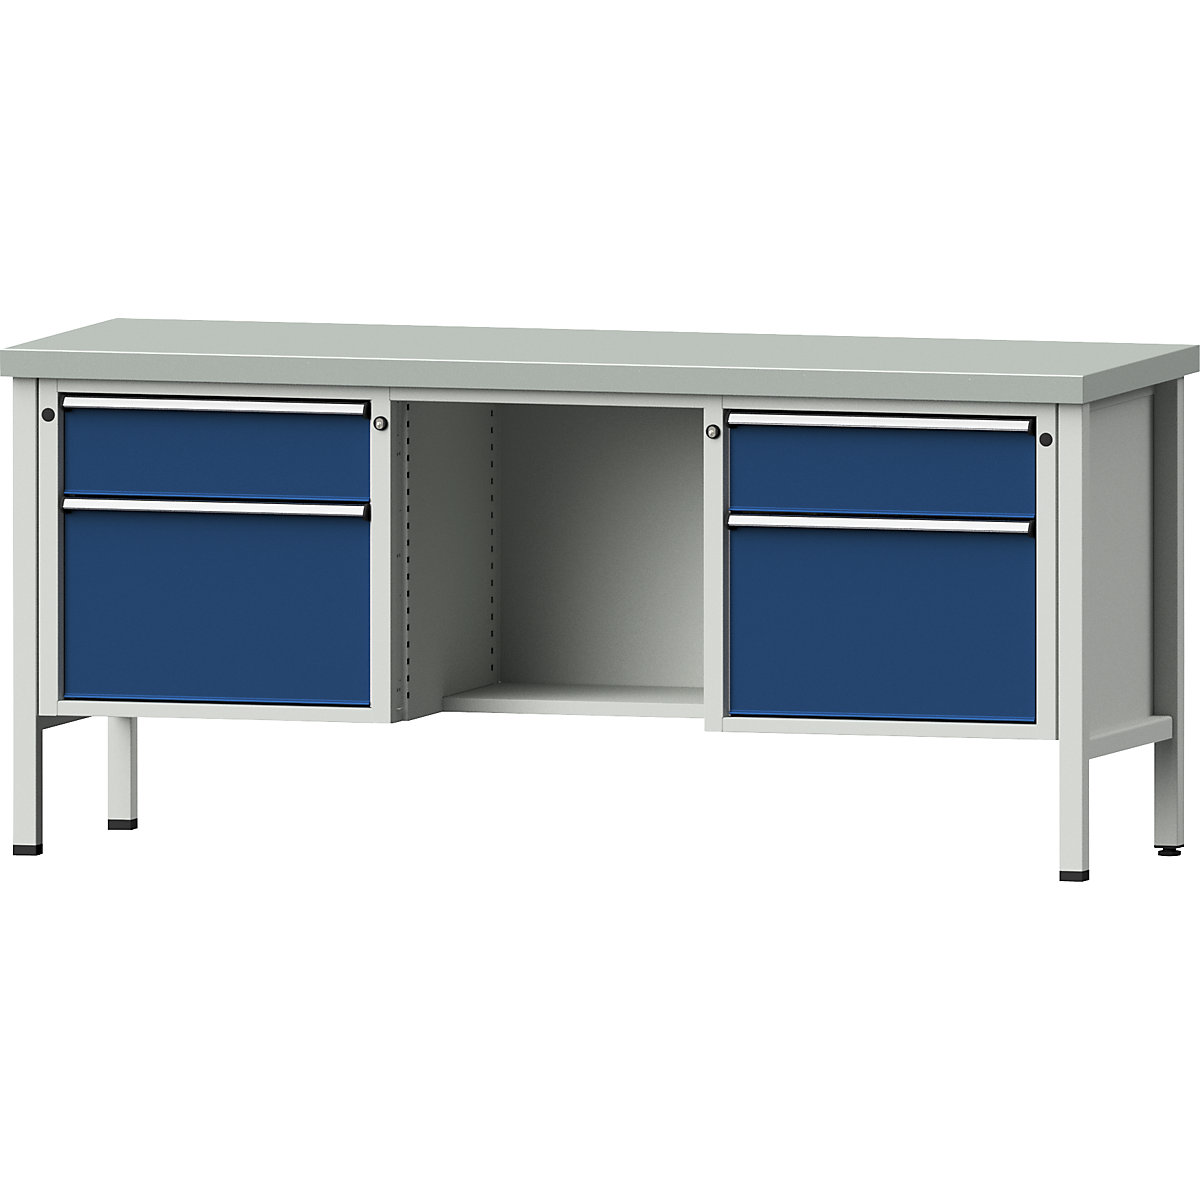 Dílenský stůl s rámovou konstrukcí – ANKE, zásuvky 2 x 180 mm, 2 x 360 mm, ½ odkládací police, výška 890 mm, potah z ocelového plechu-8